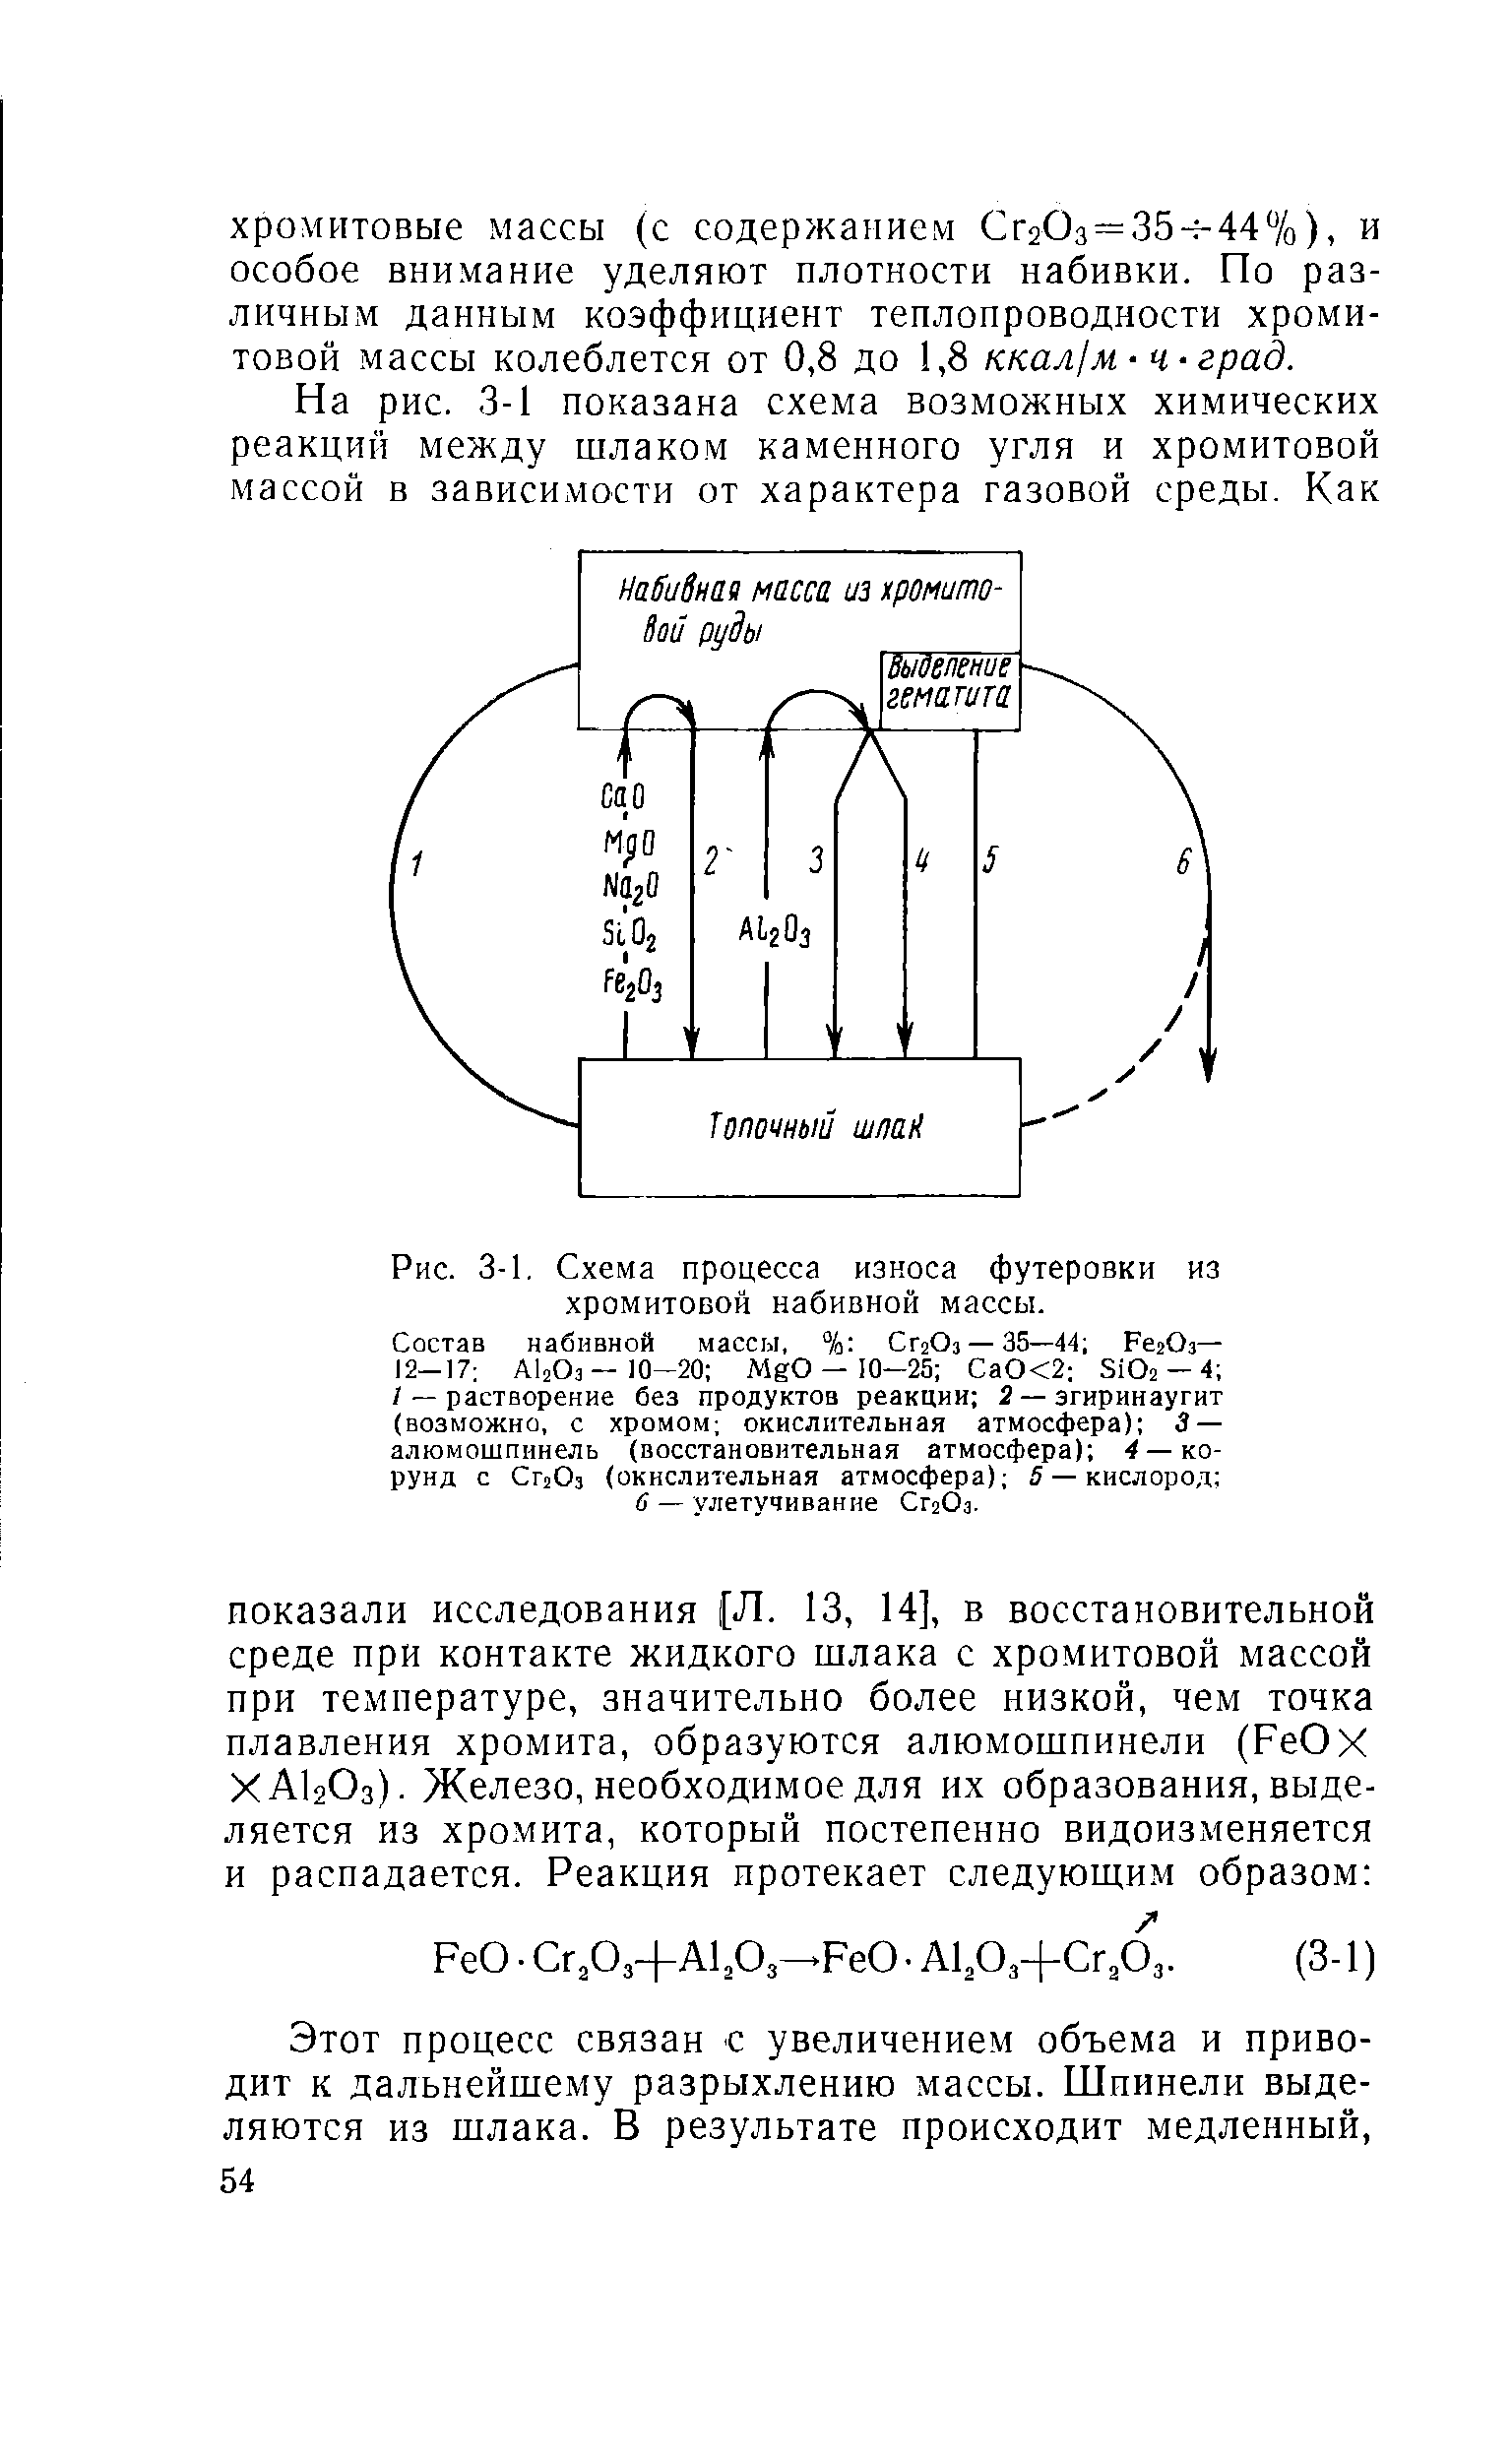 Рис. 3-1, Схема процесса износа футеровки из хромитовой набивной массы.
